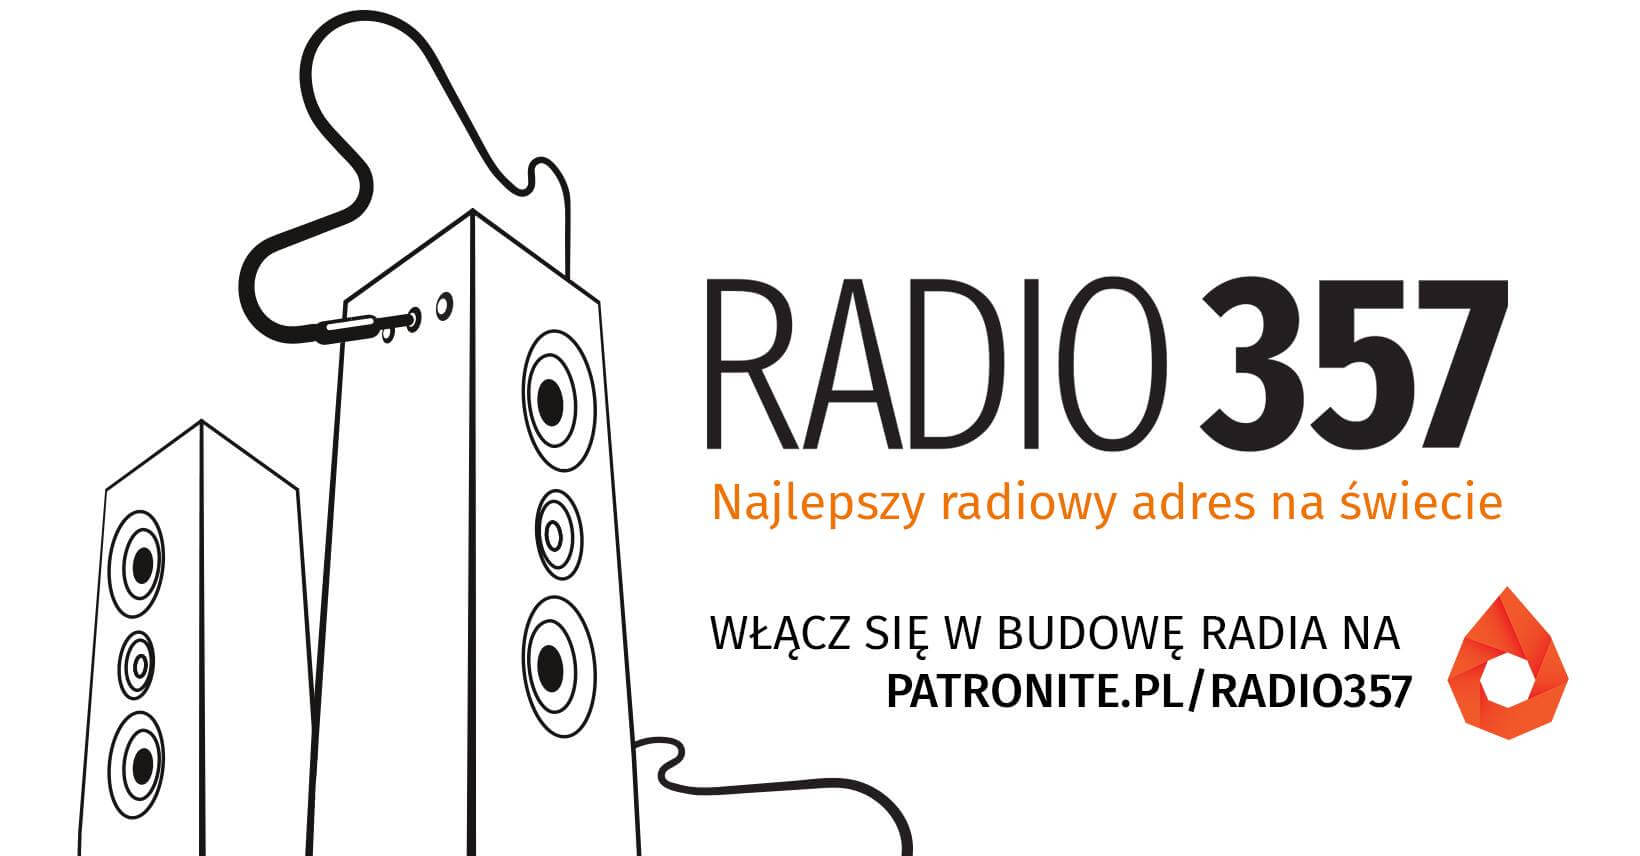 Zbiórka na Radio 357 w serwisie Patronite